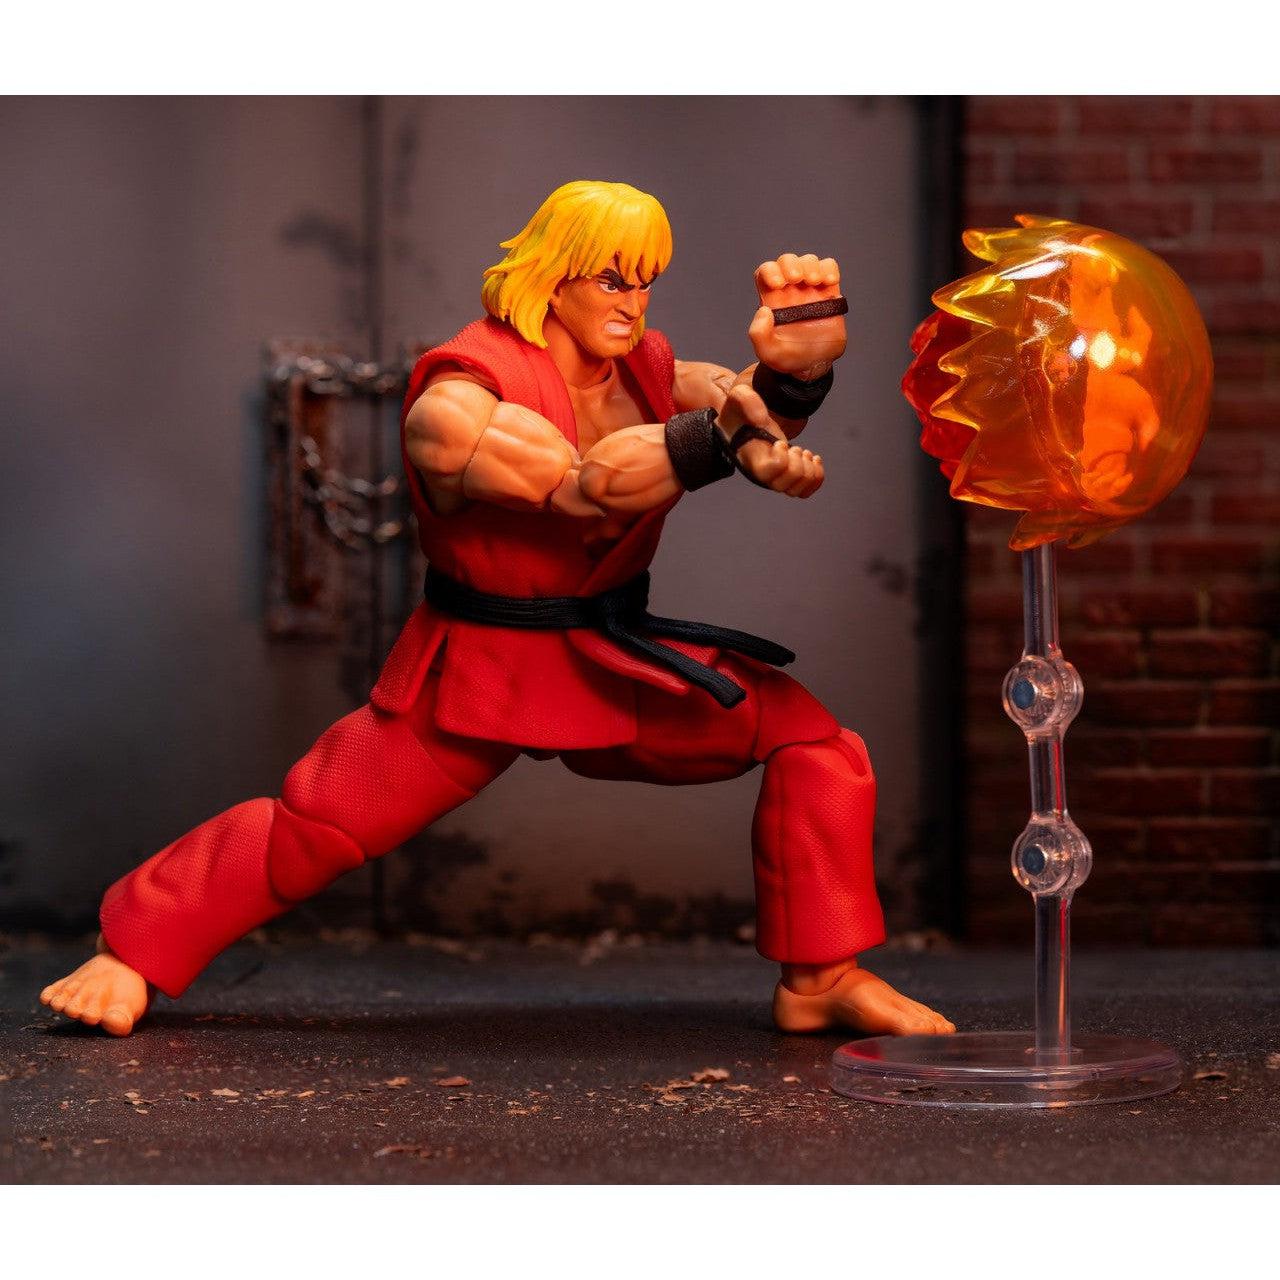 Ultra Street Fighter II The Final Challengers: Ken - 6 inch-Actionfiguren-Jada Toys-Mighty Underground